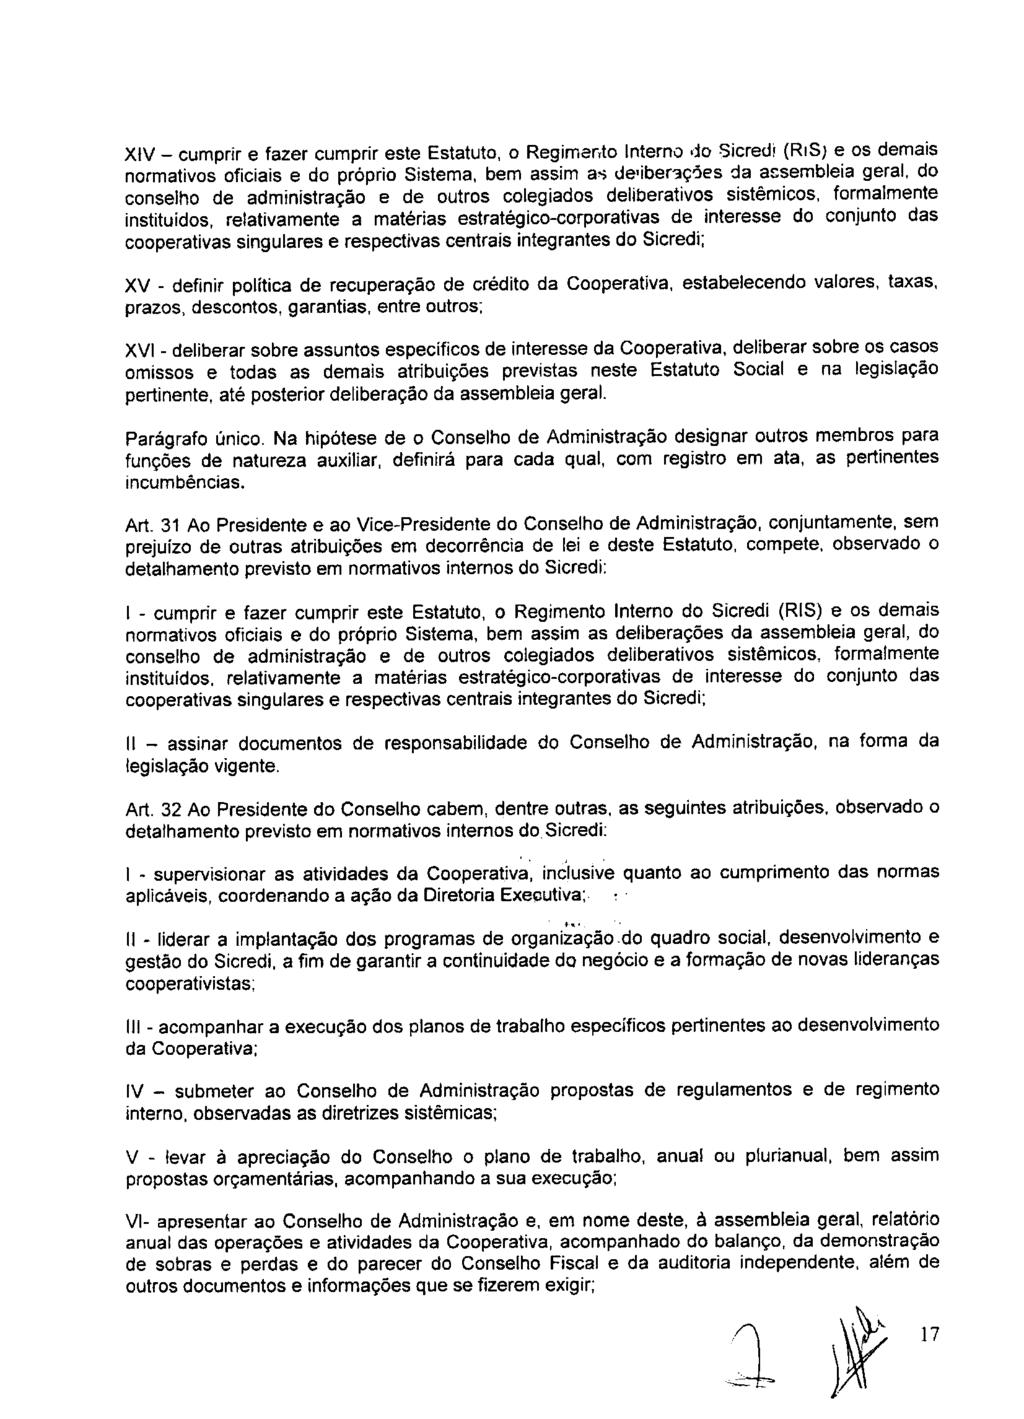 fls. 23 Este documento é cópia do original, assinado digitalmente por ANA ROSA MARQUES CROCE e Tribunal de Justica Sao Paulo, protocolado em 10/02/2016 às 15:37, sob o número